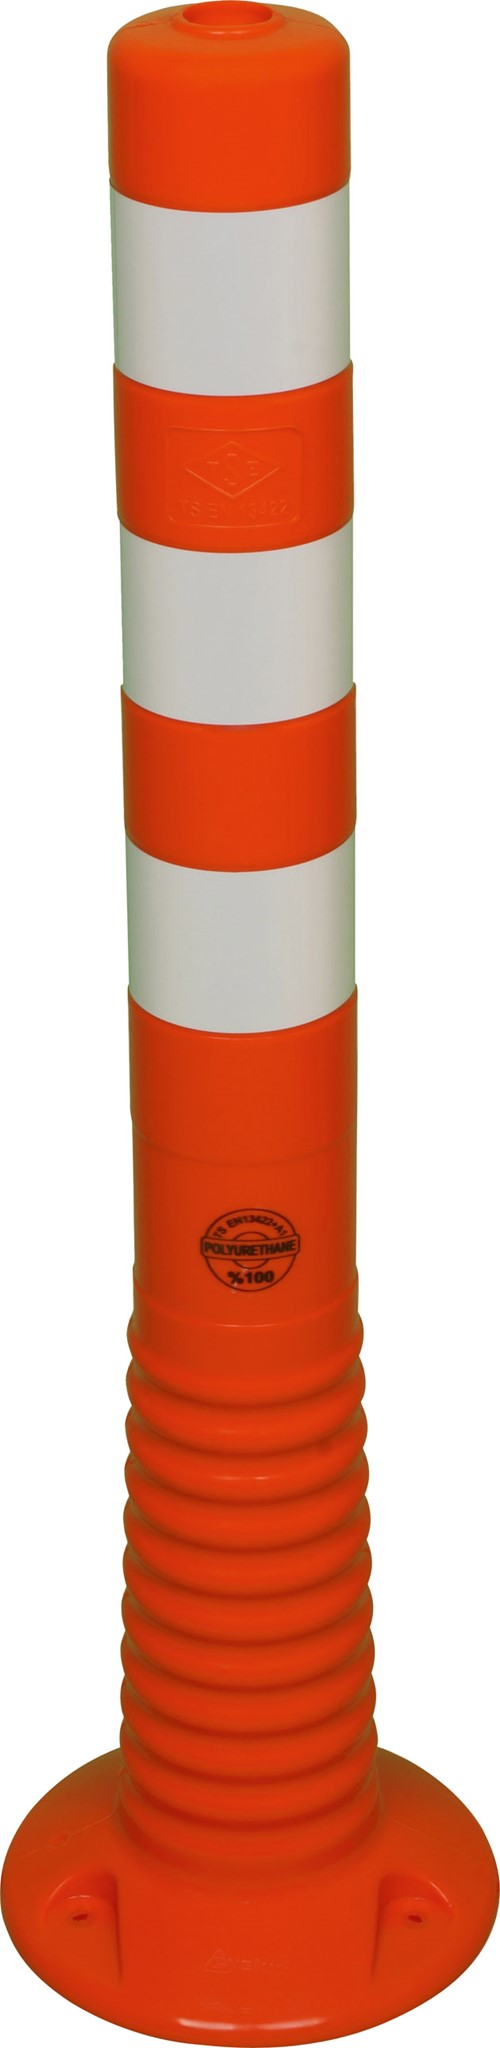 Picture of Flexipfosten 750mm, Ø 80mm, orange